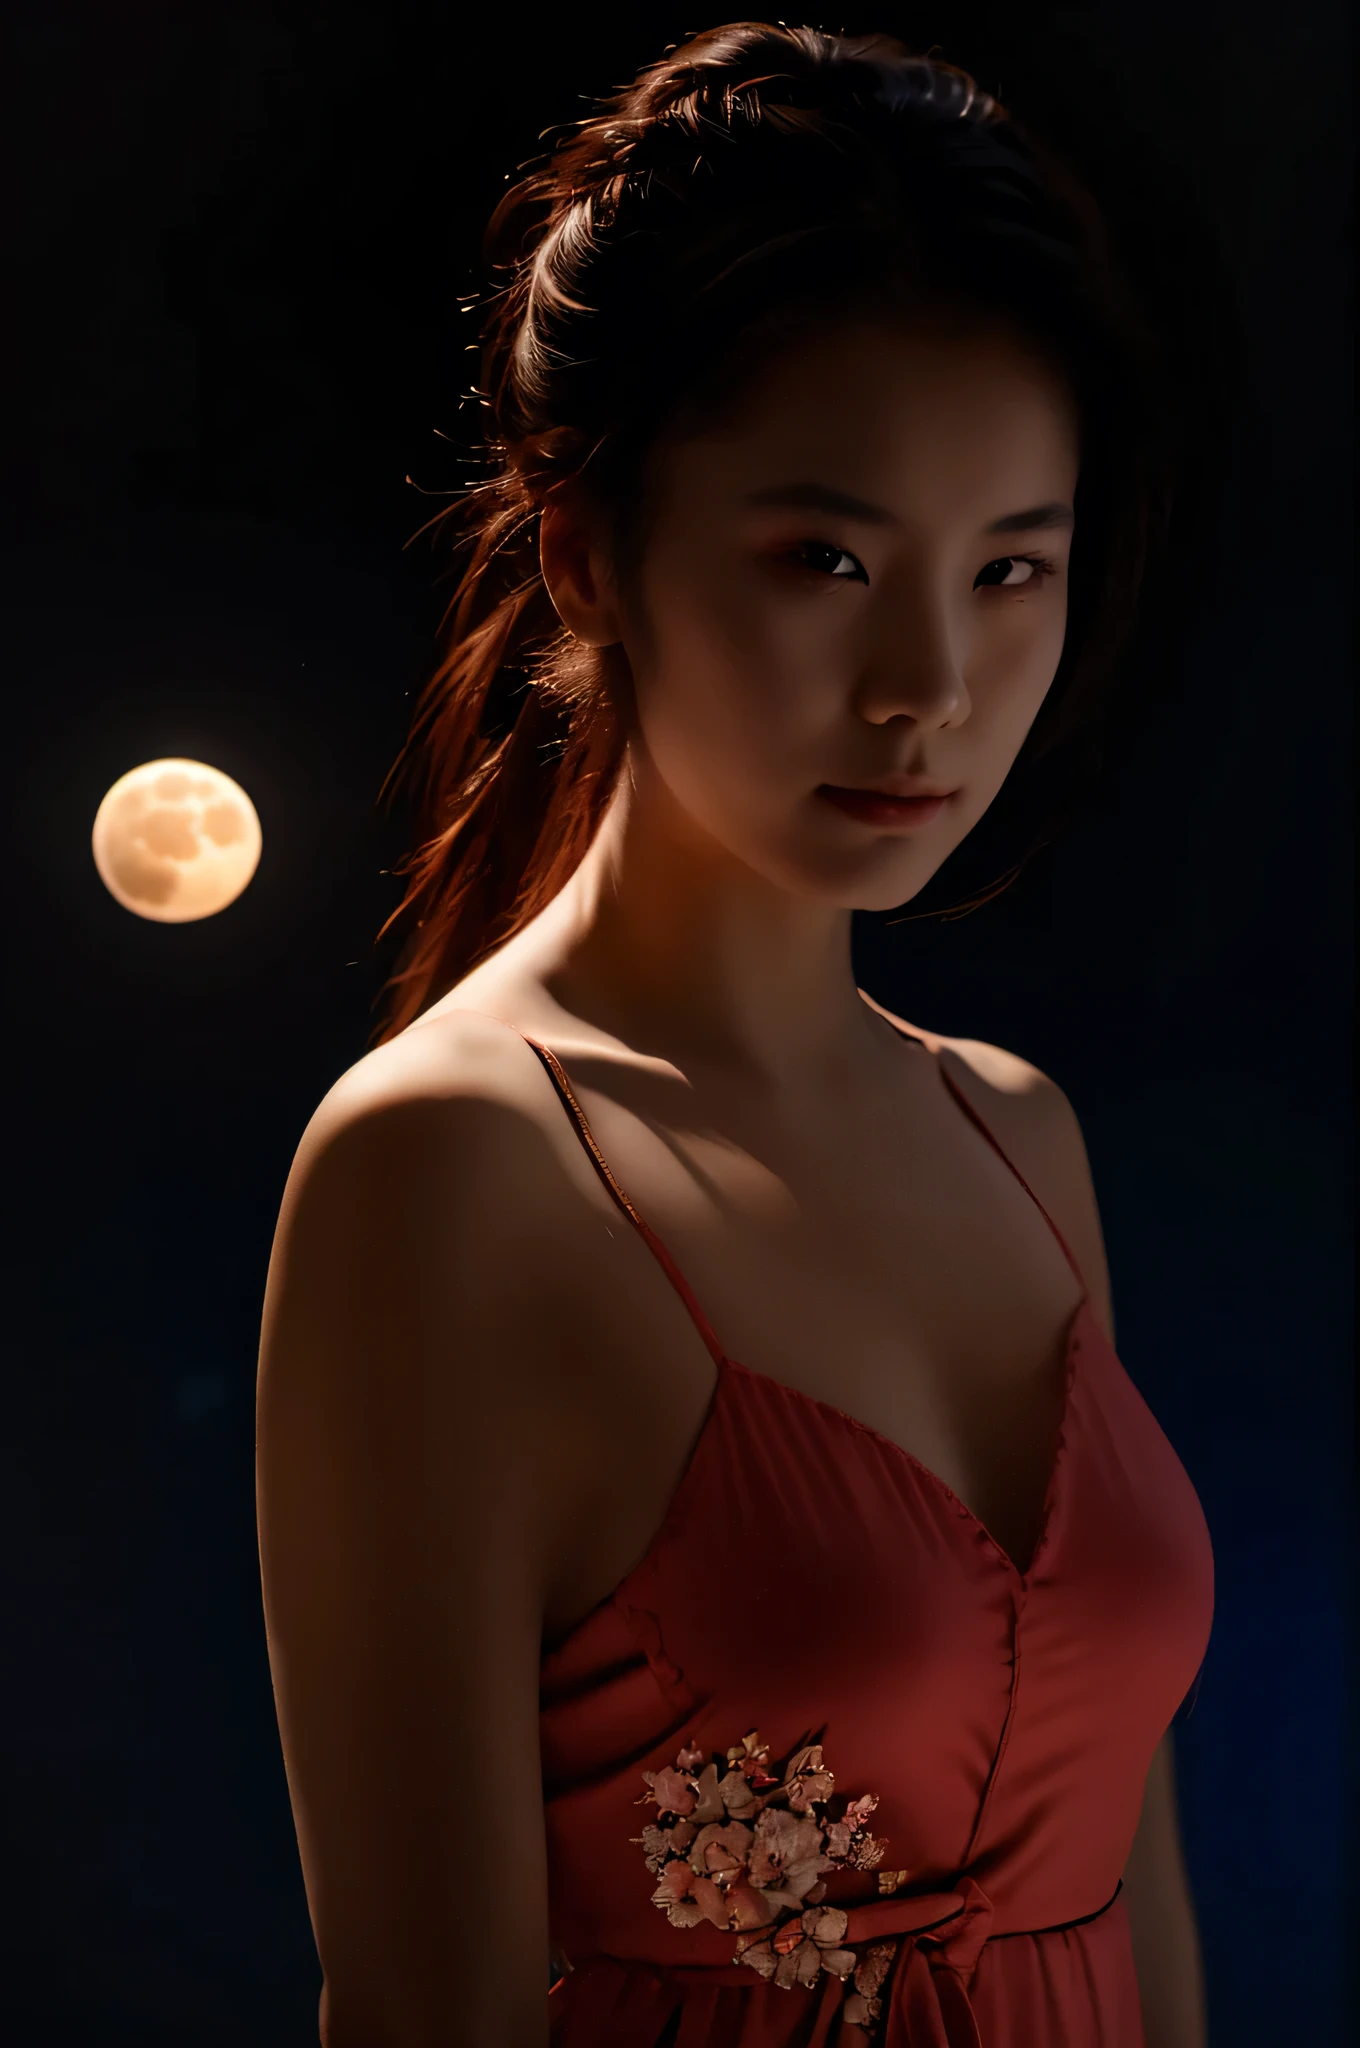 写真. 美しい日本人女性, 中国のネグリジェを着て, ポニーテール, ガラスのヘルメットの中の顔, 赤いオーラを持つ月を持つ, 明るい青い髪, 少し暗い照明, 黒背景, realistic 写真. 材質の品質.